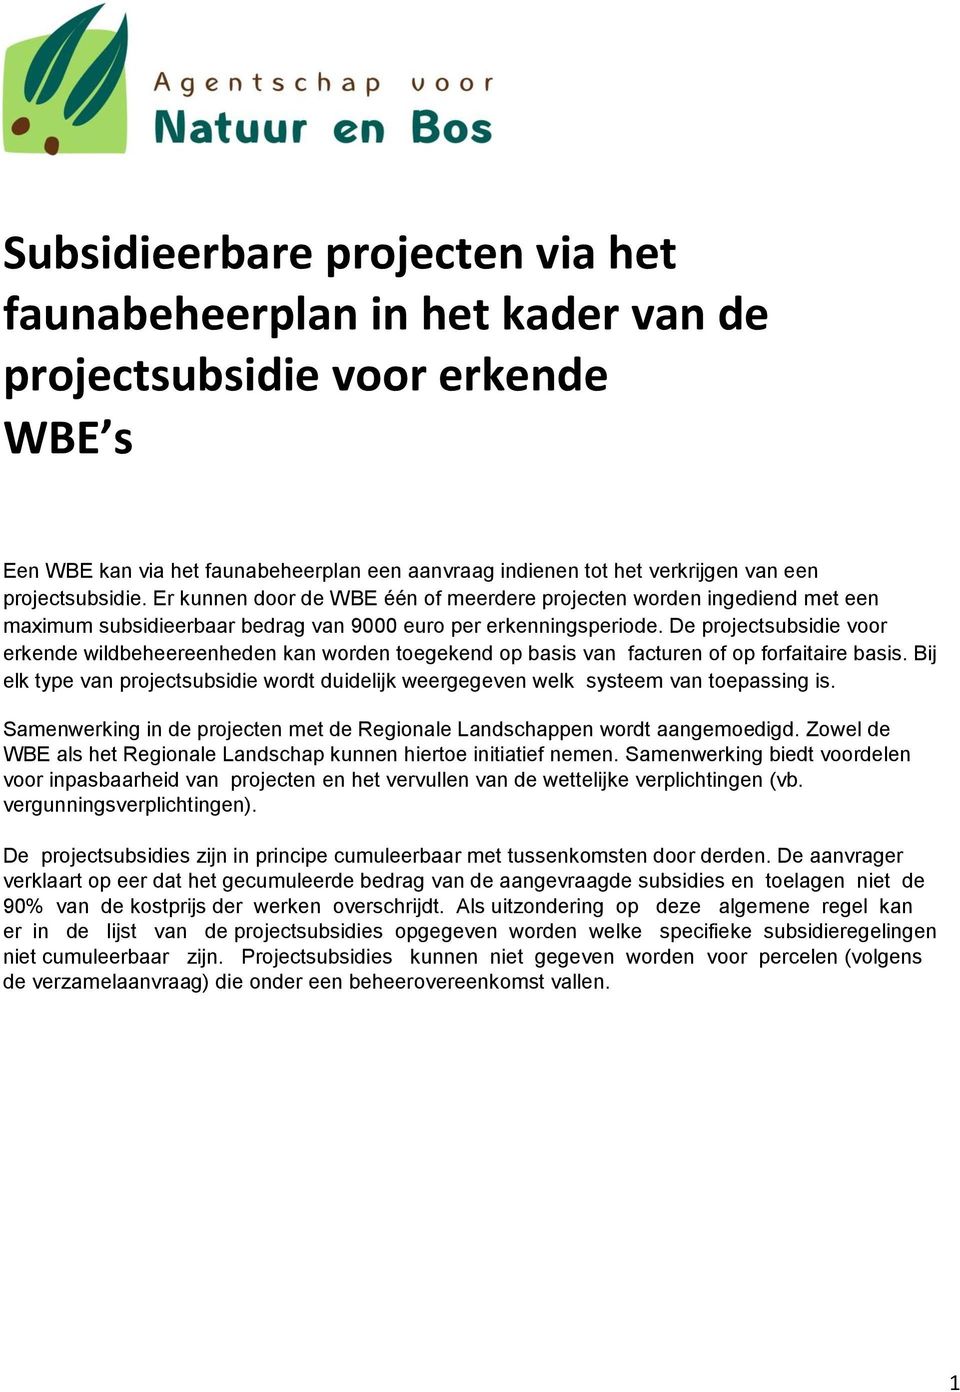 De projectsubsidie voor erkende wildbeheereenheden kan worden toegekend op basis van facturen of op forfaitaire basis.